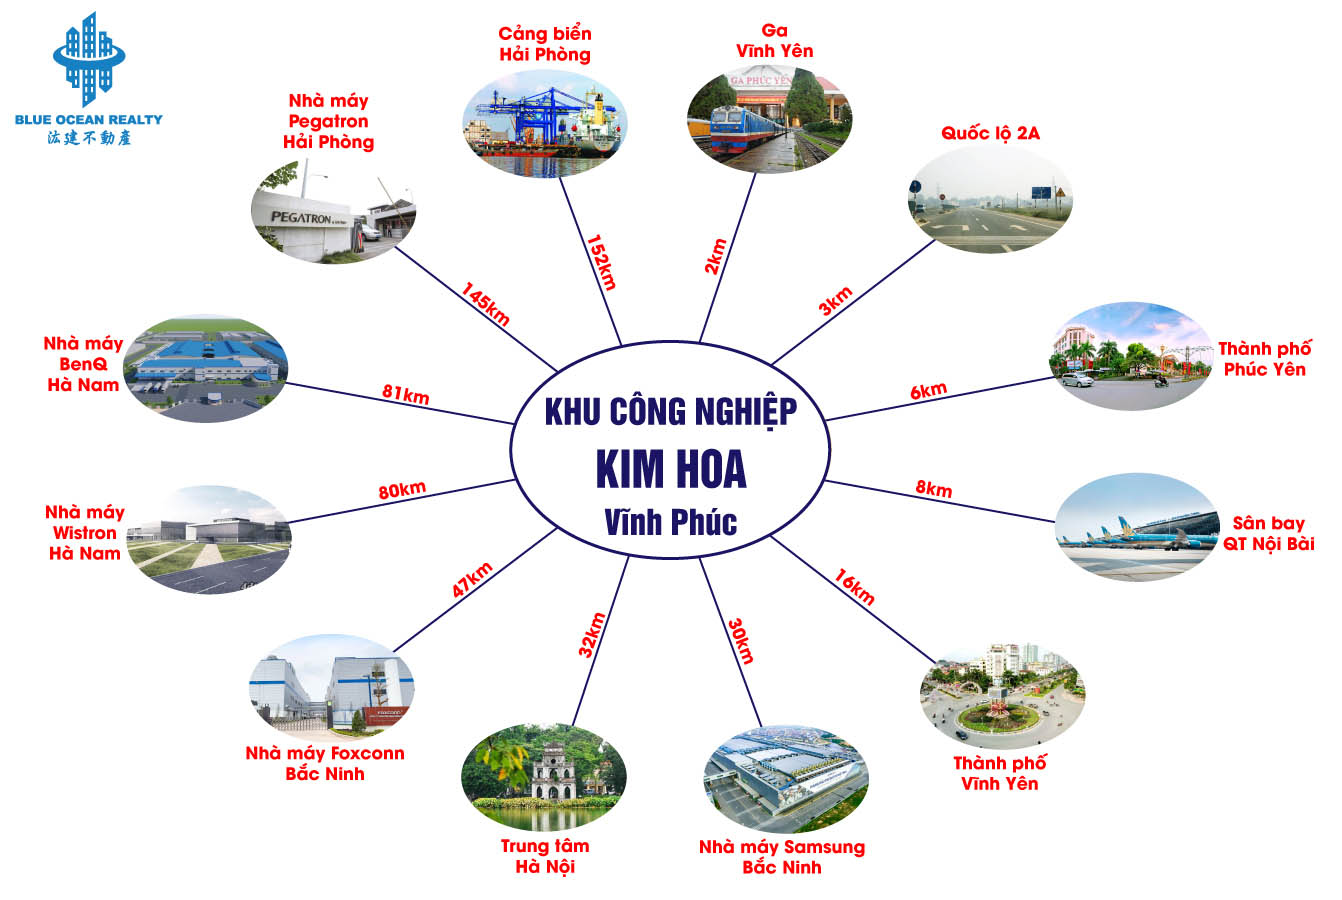 Khu công nghiệp (KCN) Kim Hoa - Vĩnh Phúc